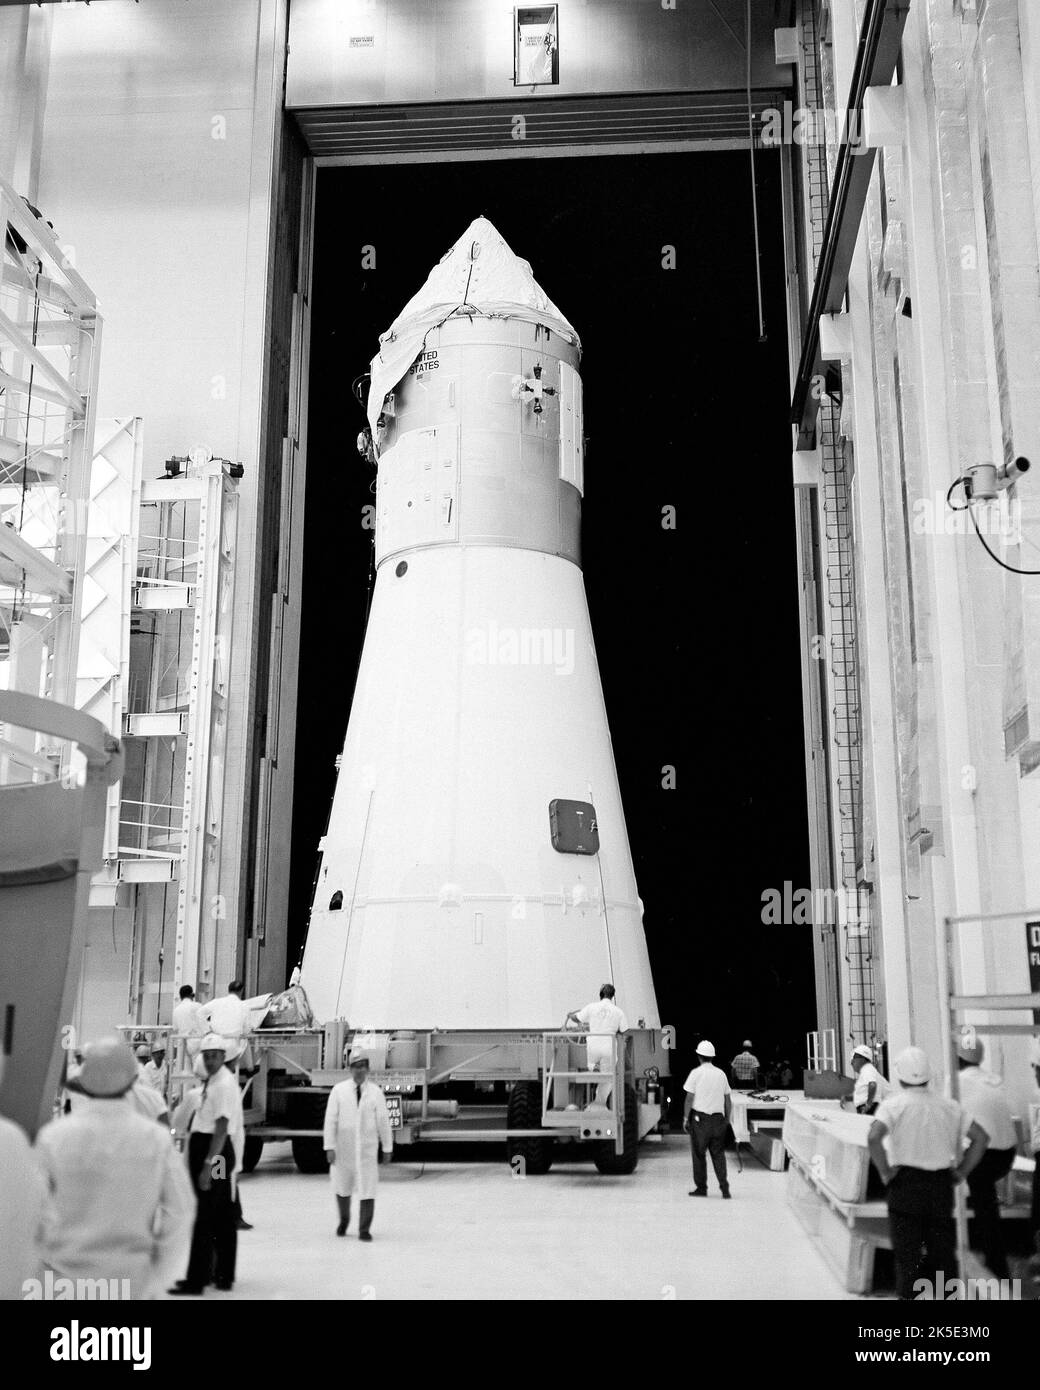 LES tests DE configuration I AS-500D se sont terminés par un test spécial pour vérifier le système de contrôle de vol. Le programme d'essai comprenait des essais de roulis, de tangage, de lacet et de déplacement longitudinal, terminés plus tôt en 1967. L'AS-500D était un article d'essai dynamique du véhicule spatial Saturn V. Ici, l'engin spatial Apollo quitte le bâtiment des opérations de l'engin spatial habité du Kennedy Space Center de la NASA pour se rendre au bâtiment d'assemblage de véhicules qui sera accouplé au véhicule de lancement Saturn. Le Saturn V a été conçu au centre de vol spatial Marshall de la NASA. NASA image / crédit: NASA Banque D'Images